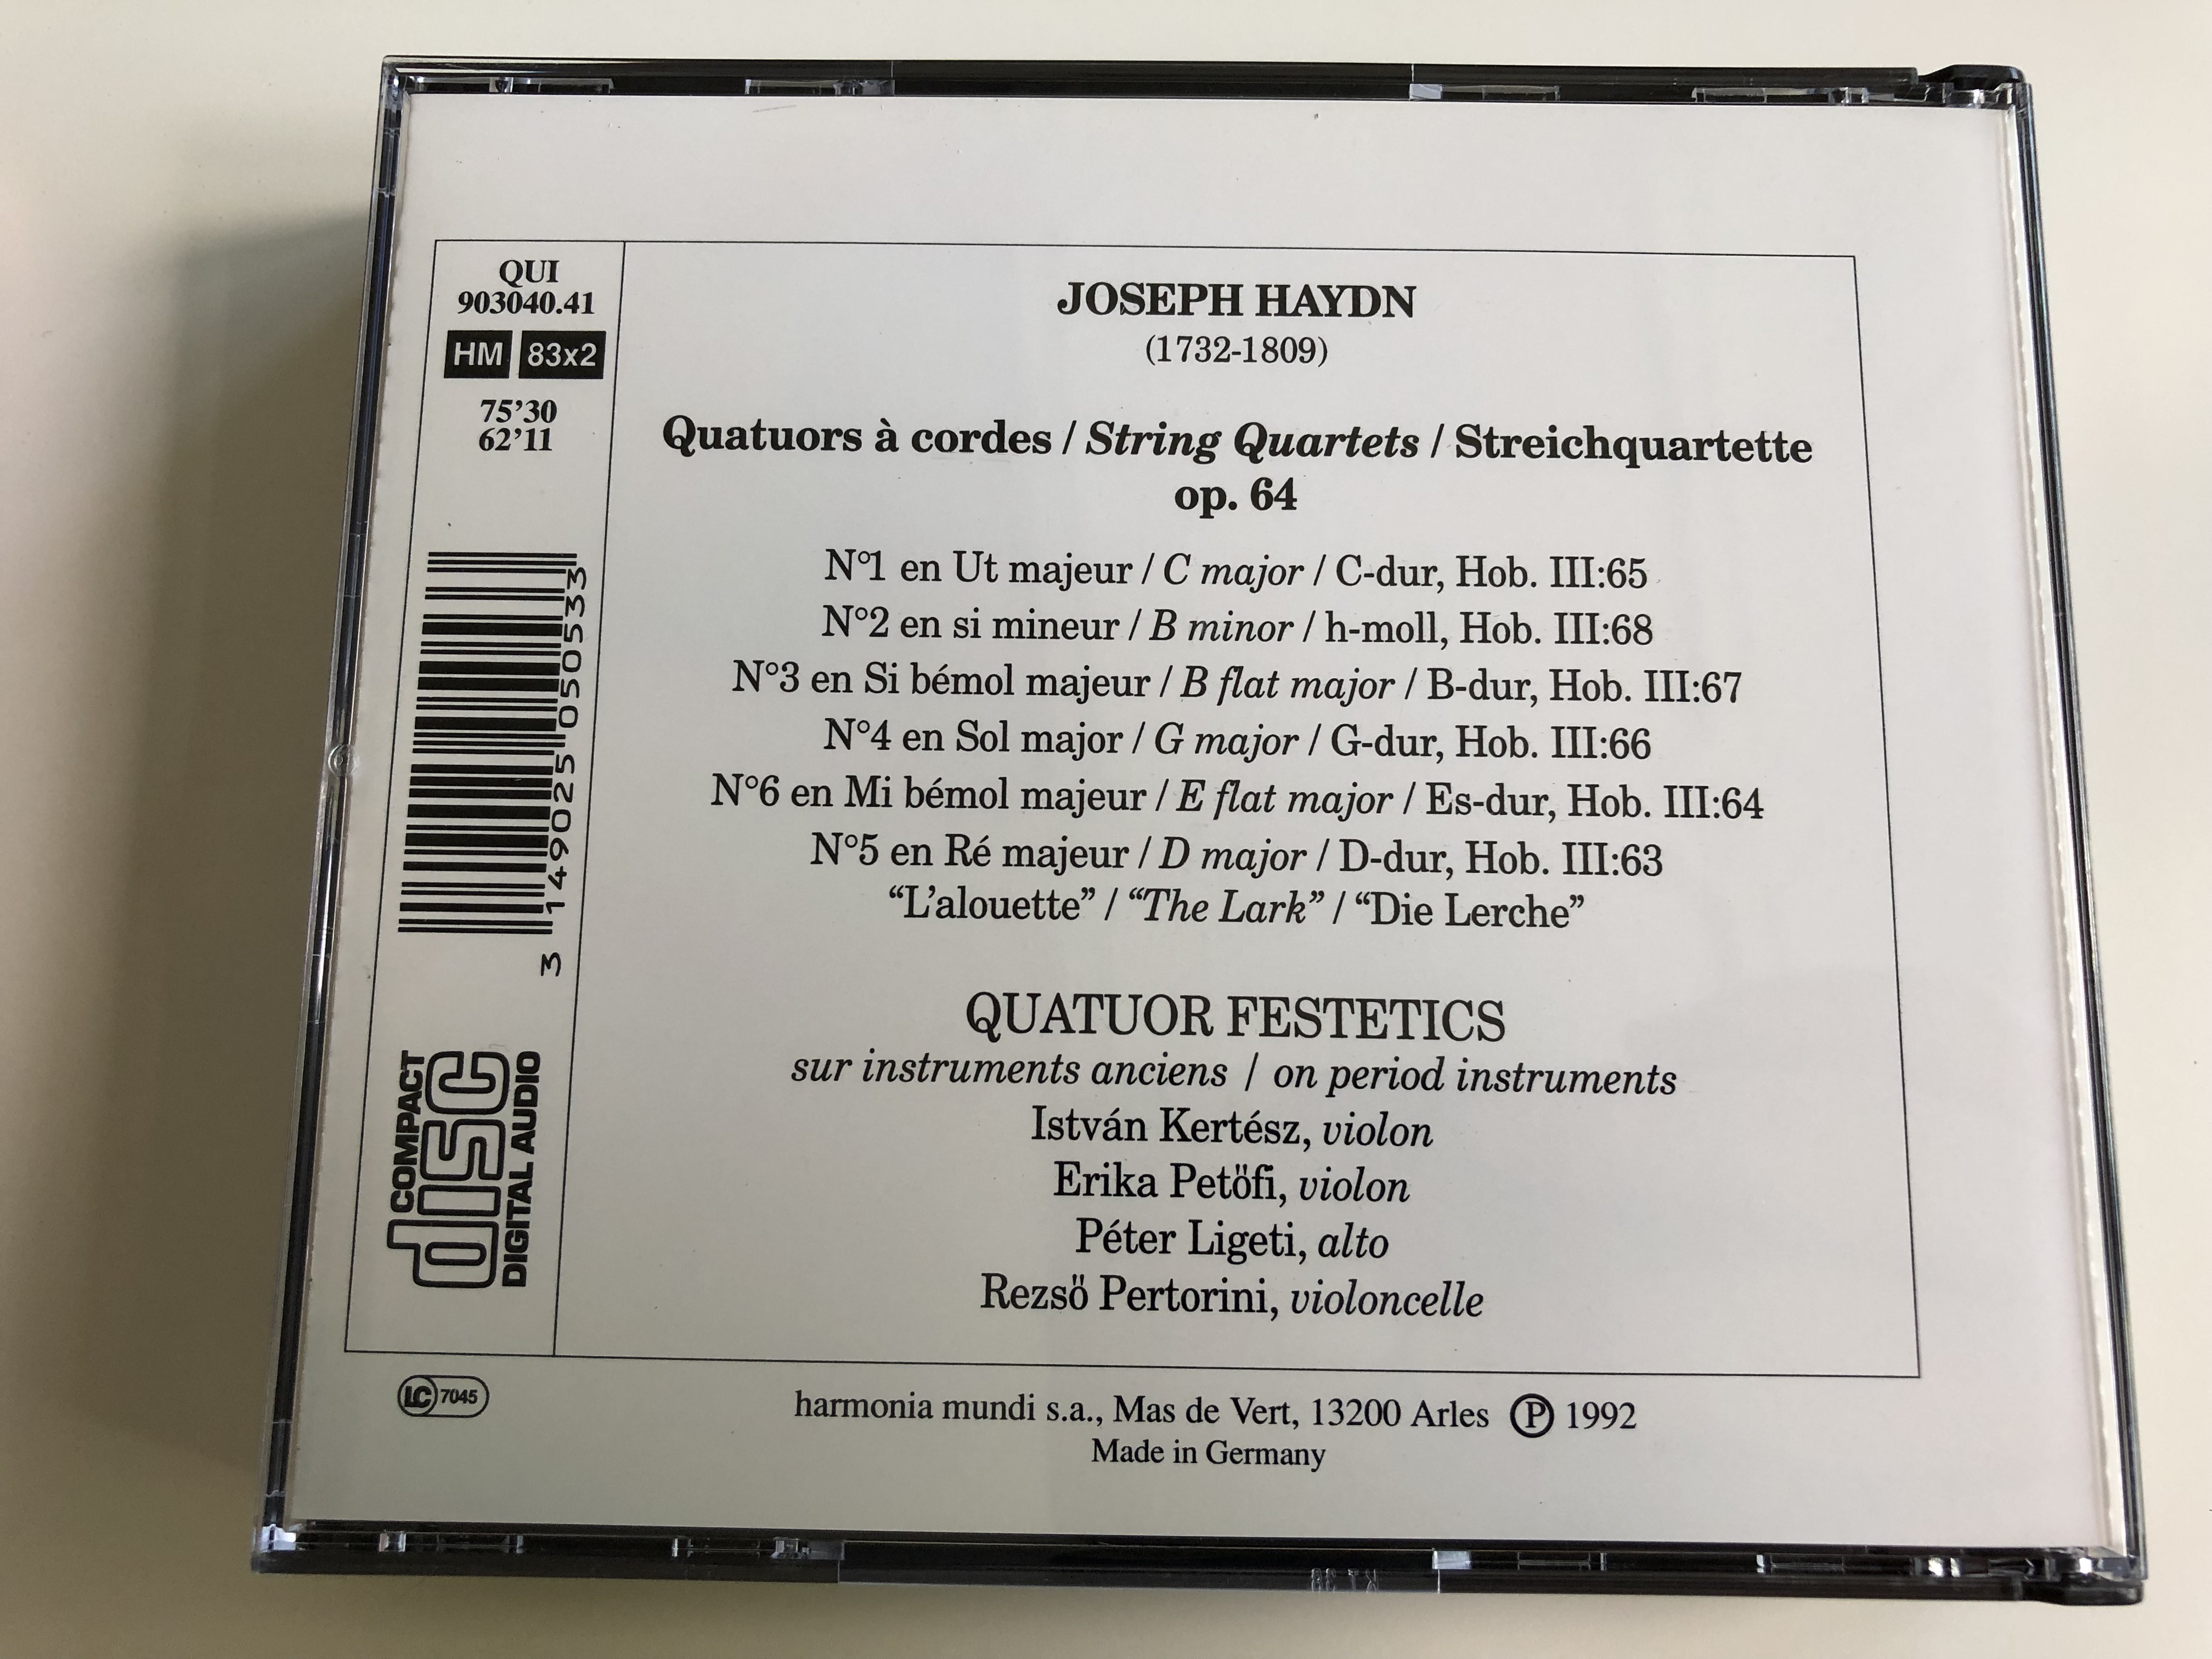 joseph-haydn-quatuors-op.64-quator-festetics-on-period-instrument-audio-cd-1992-qui-903040.41-2-cd-13-.jpg